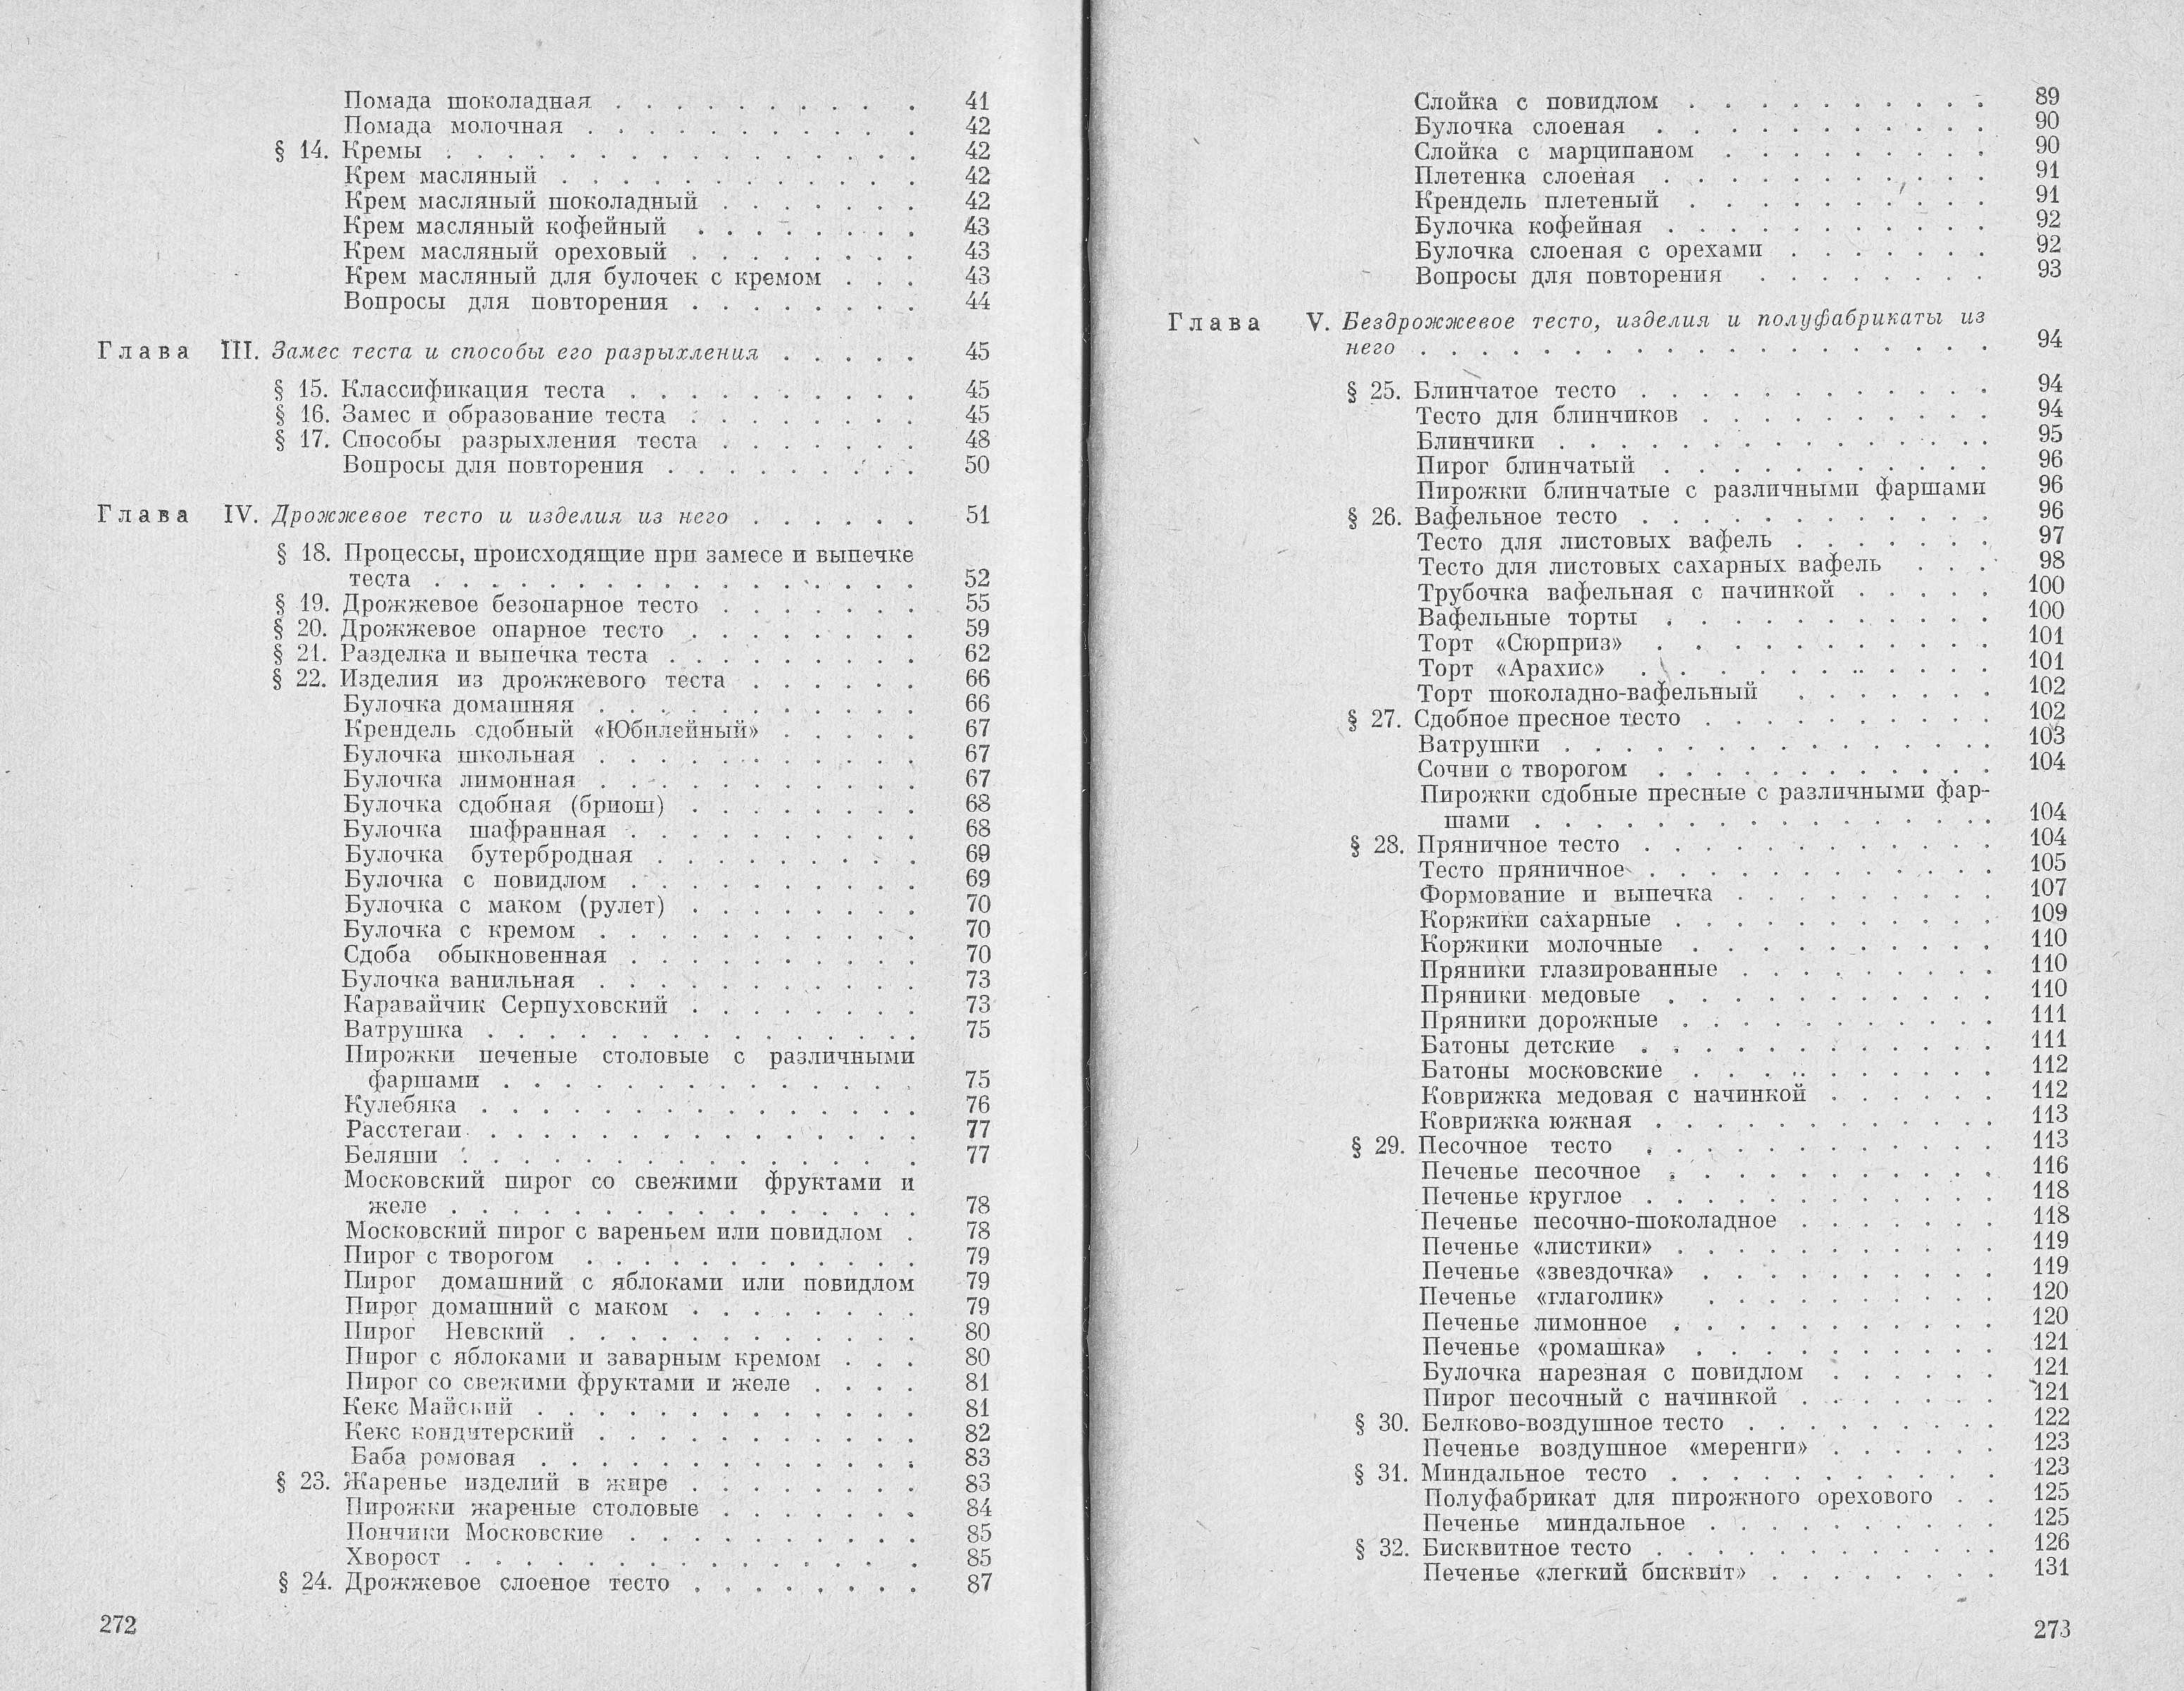 Технологія приготування борошняних кондитерських виробів Н.Г. Бутейкіс, А.А. Жукова 1976 г. сторінки 272‒273